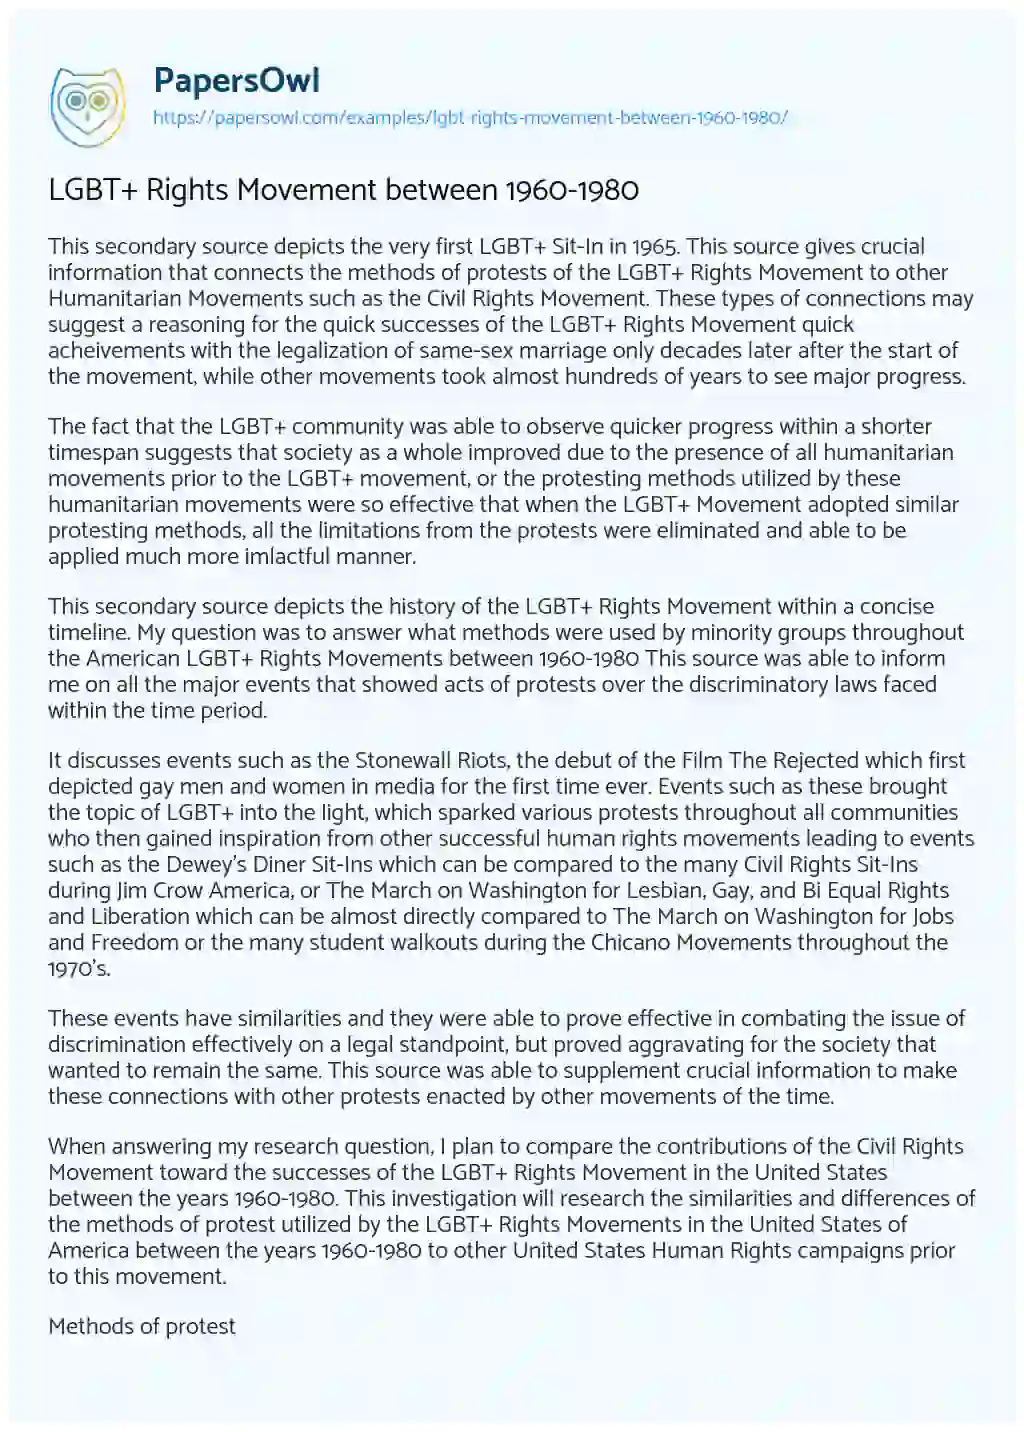 LGBT+ Rights Movement between 1960-1980 essay